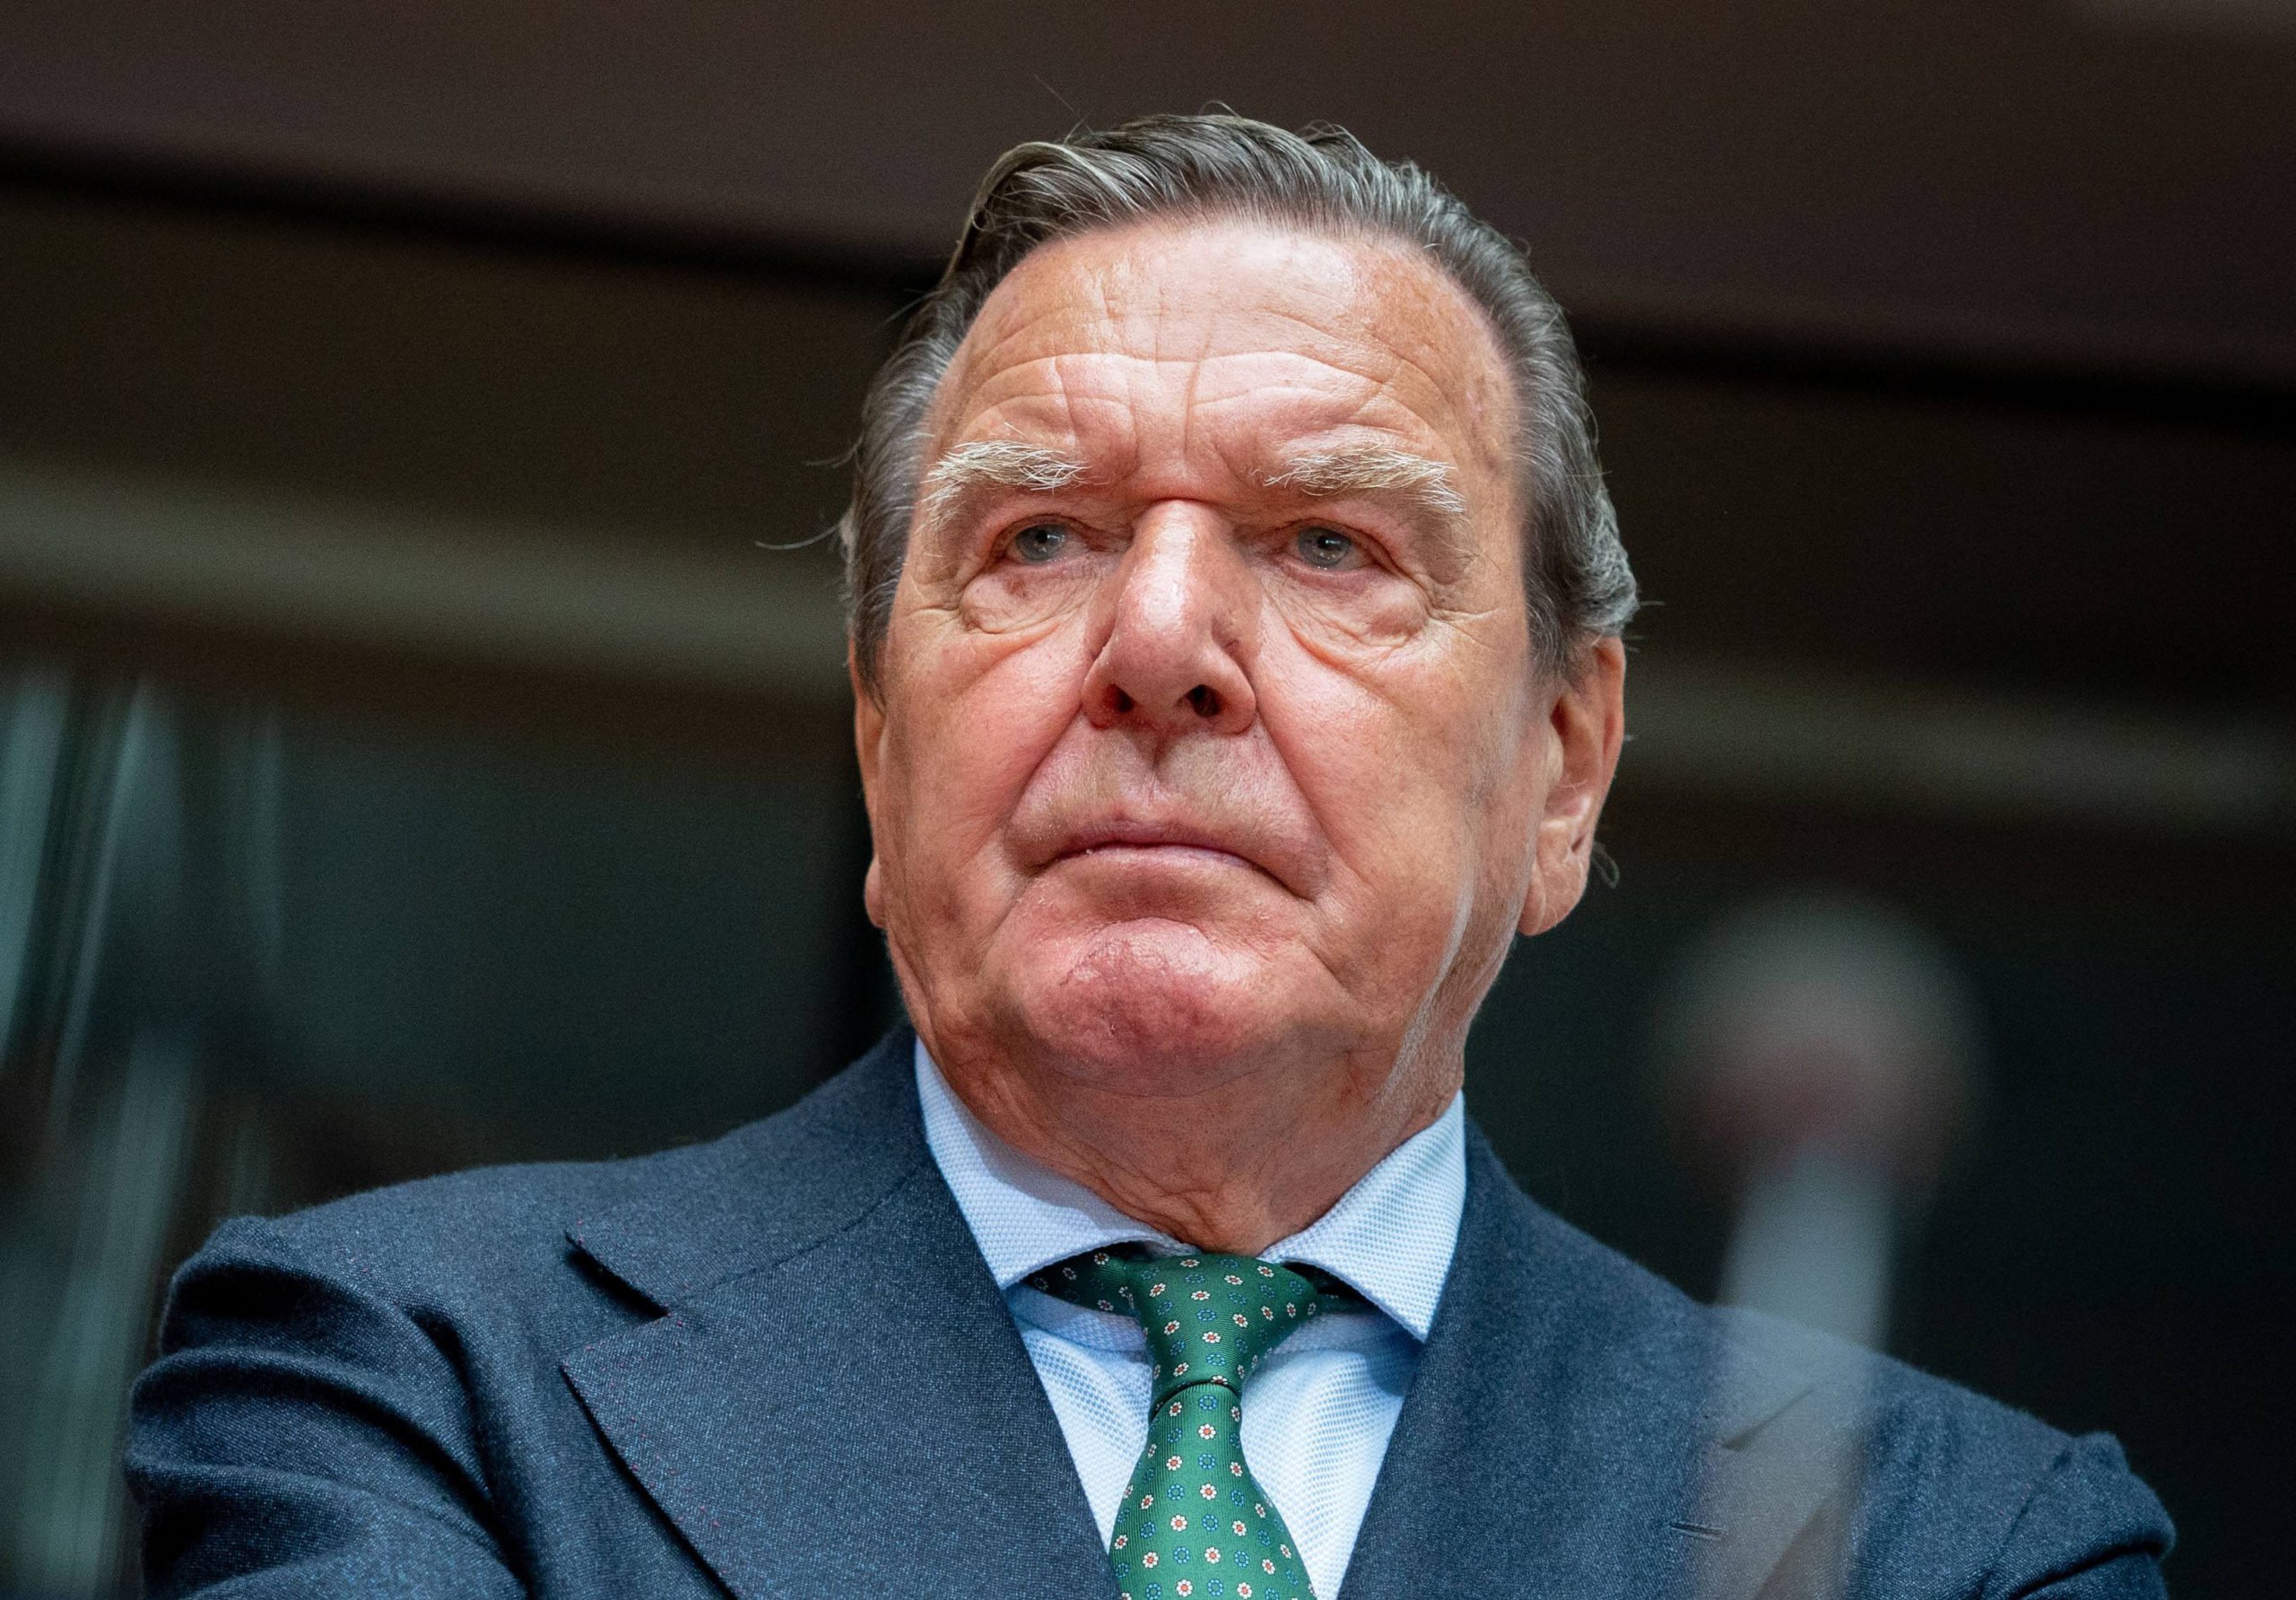 Pressure mounts on ex-German chancellor Schröder over Russia ties